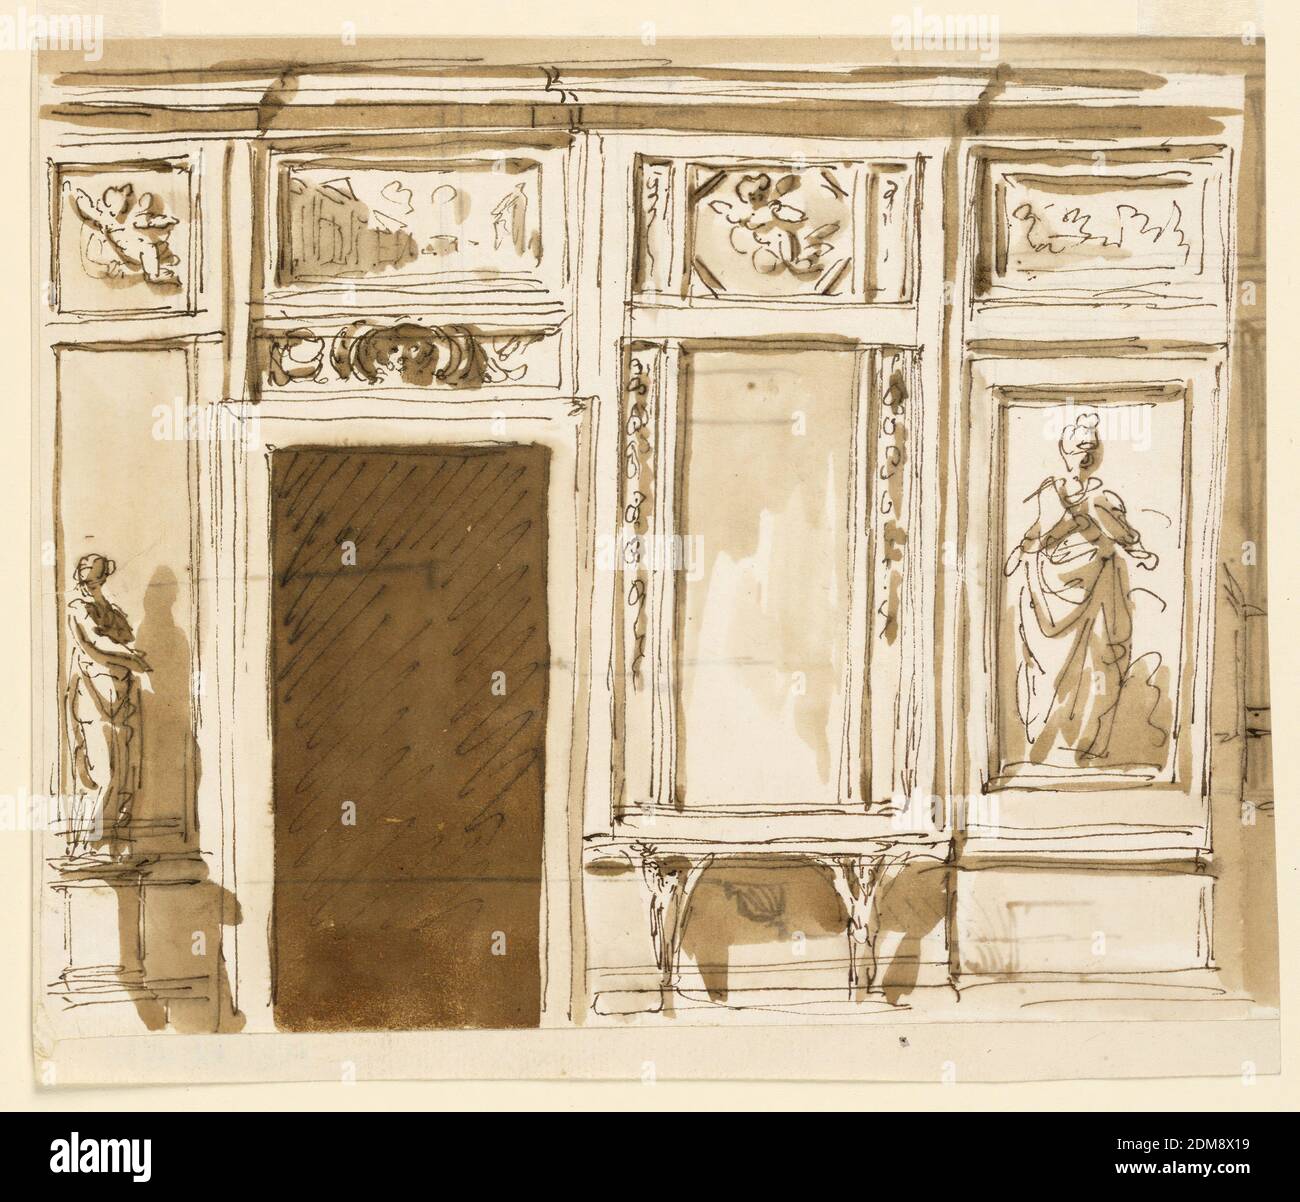 Elevation of a Drawing Room Wall, Giuseppe Barberi, italienisch, 1746–1809, Feder und braune Tinte, Pinsel und braune Wäsche auf cremefarbenem Papier, gefüttert, ein alternativer Vorschlag für -1582. Die linke Seite ist abgebildet. Die zentrale Tafel ist mit der Figur einer Frau verziert. Der Konsolentisch unter dem schauenden Glas wird von geflügelten Sphinxen unterstützt. Neben dem oberen Teil des aussehenden Glases hängen Girlanden. Über der Tür ist ein Fries mit einer Maske in der Mitte, die von einer architektonischen Ansicht gefolgt wird. Fliegende Putti befinden sich in den oberen Teilen der Verkleidung neben der Tür Stockfoto